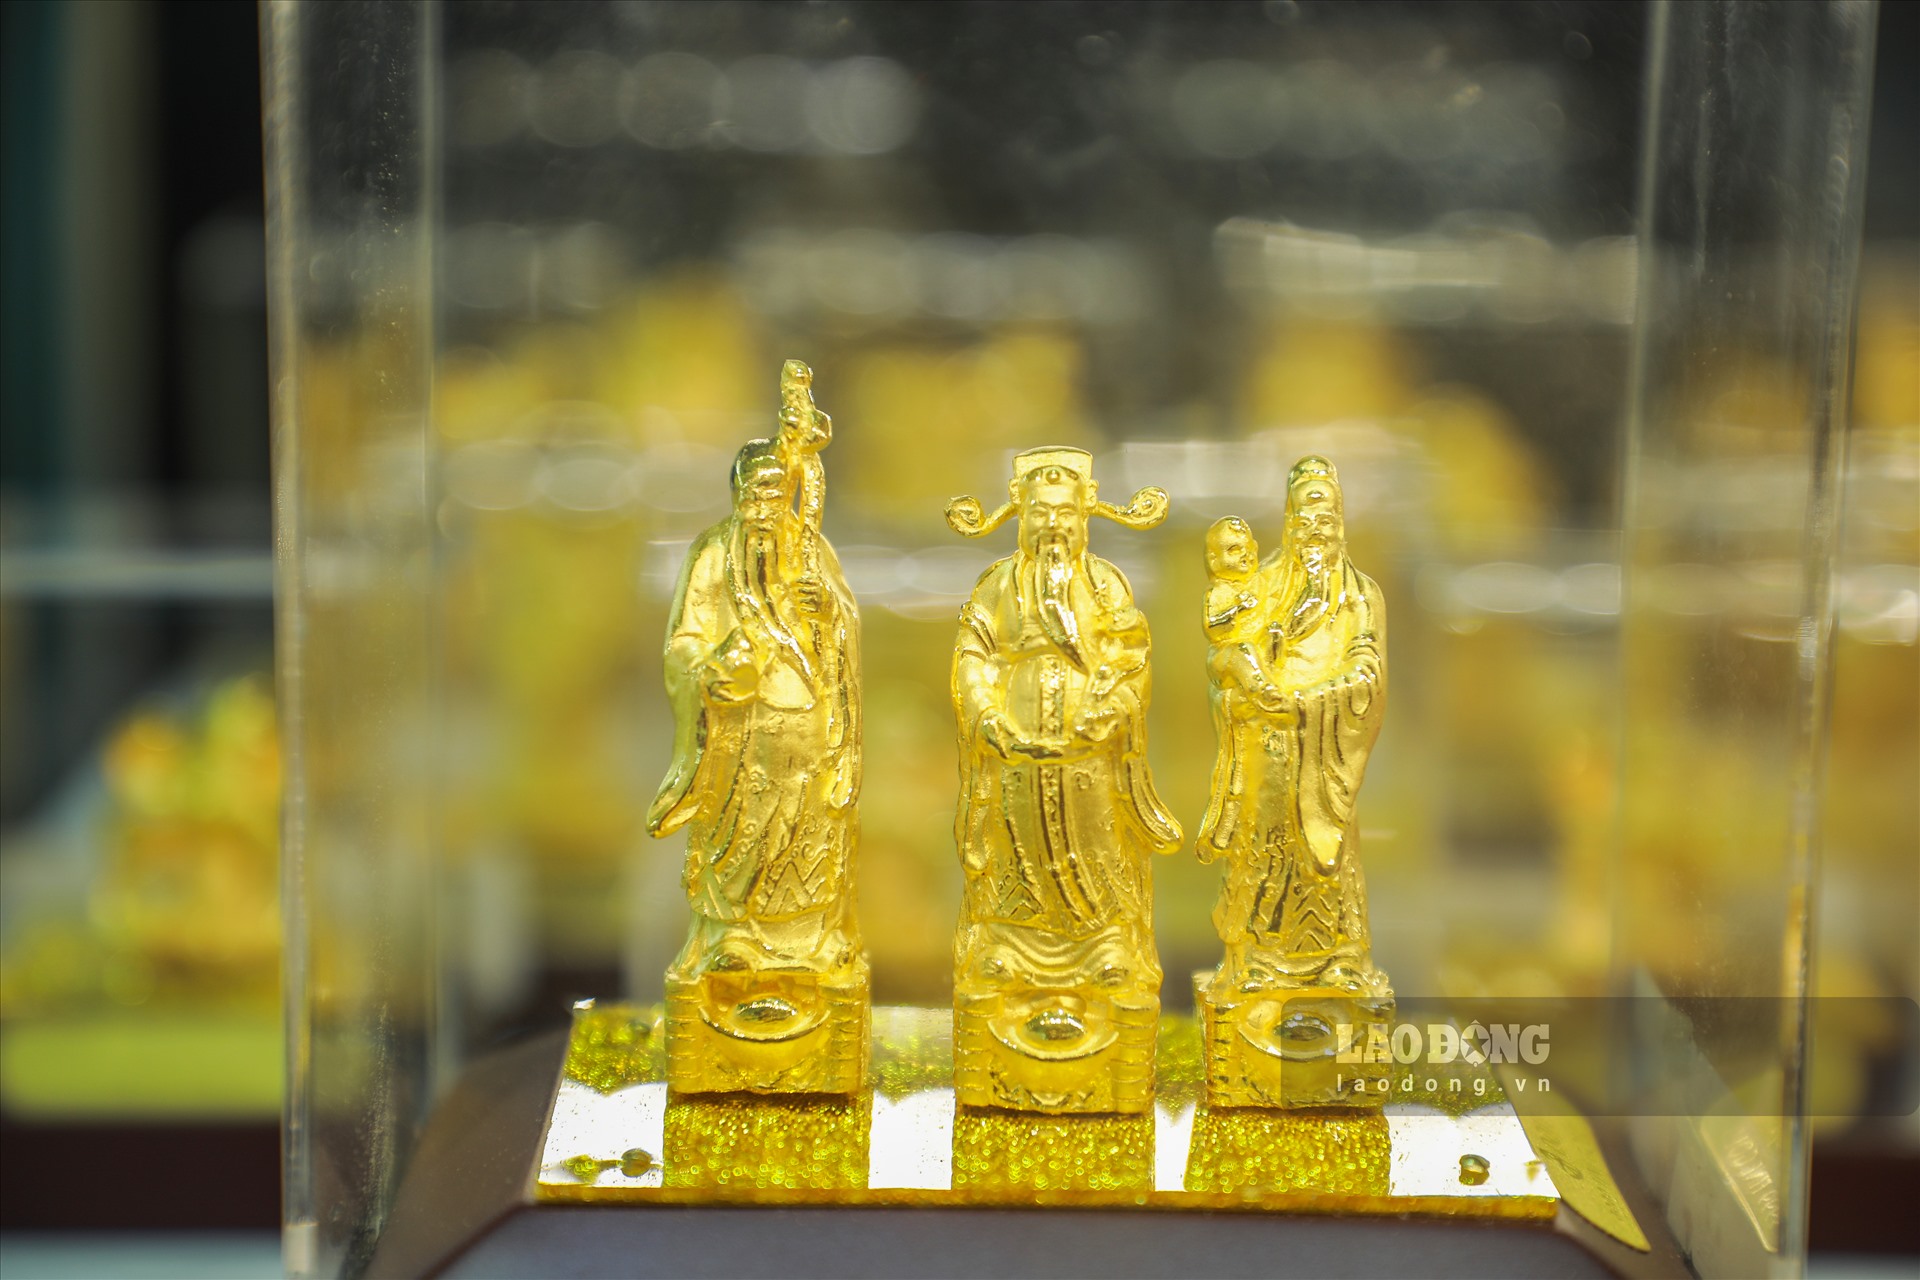 Tính đến phiên giao dịch sáng ngày 8.7, giá vàng tiếp tục được Công ty VBĐQ Sài Gòn điều chỉnh tăng mạnh mức 49,87 – 50,32 triệu đồng/lượng (mua vào – bán ra), Tập đoàn DOJI niêm cũng điều chỉnh giá vàng lên mức 49,95 - 50,15 triệu đồng/lượng.